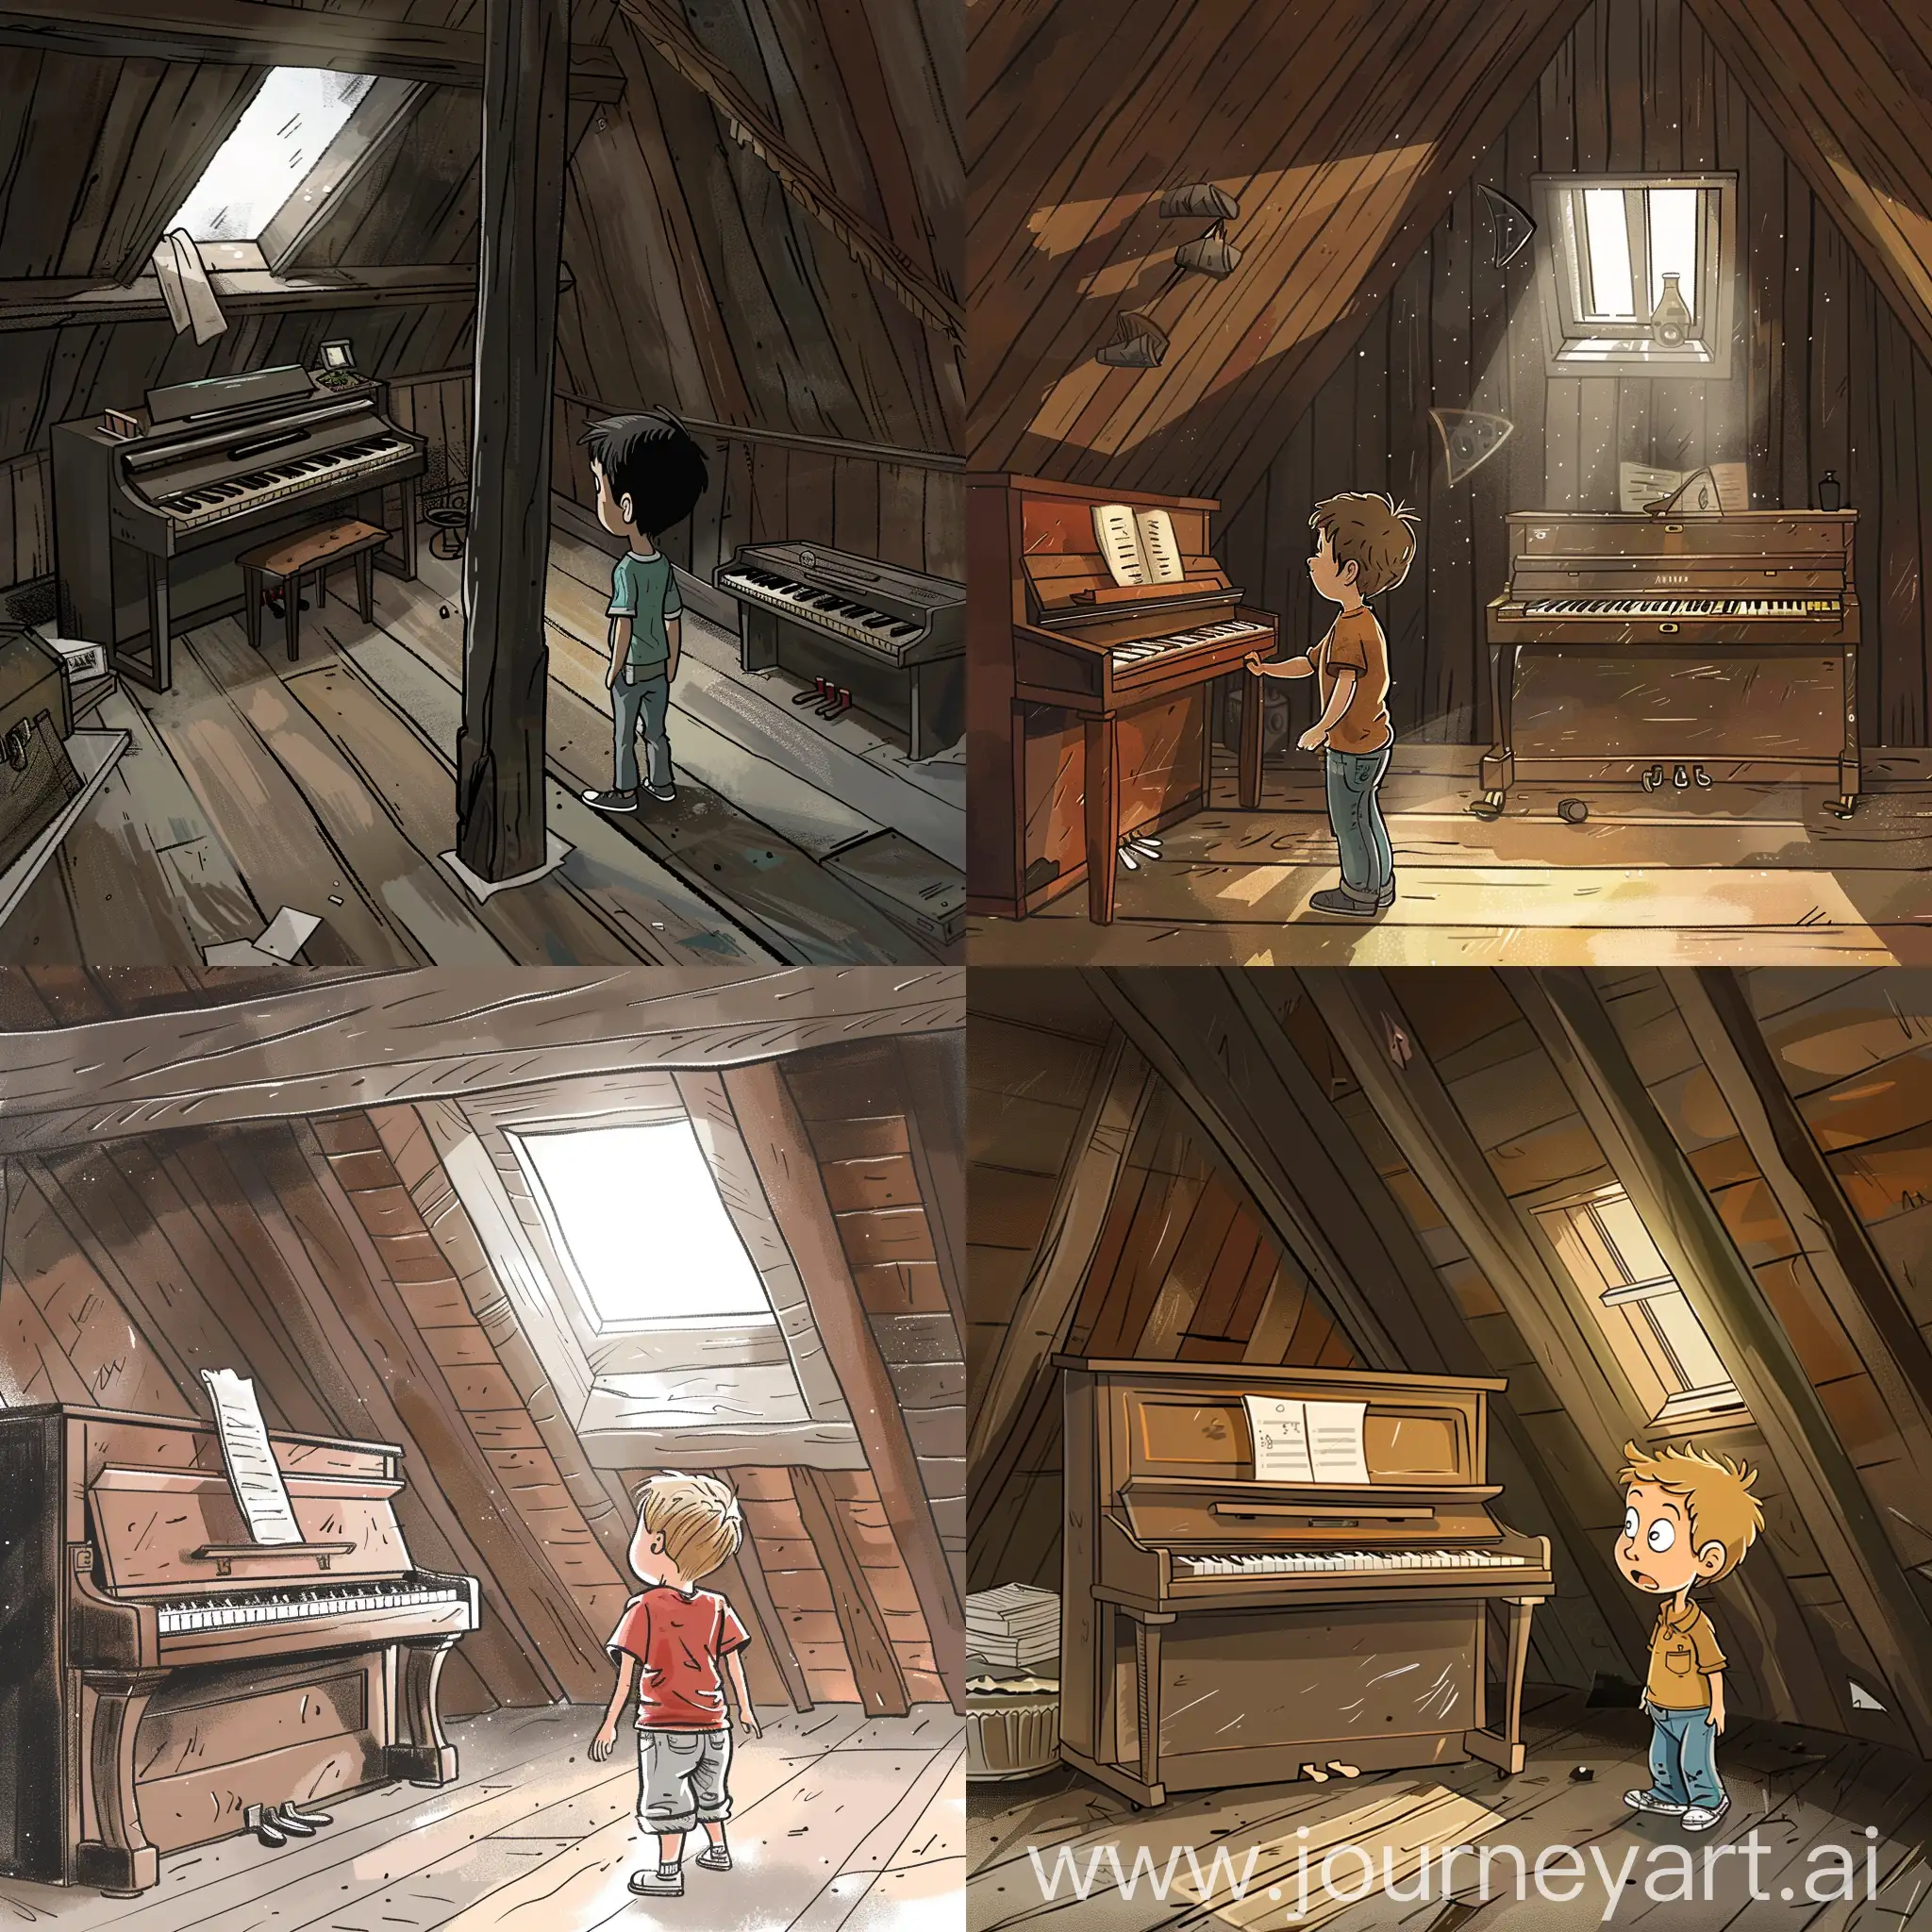  
Нарисуй в мультяшном стиле чердак, в котором маленький мальчик недоумевающе смотрит на фортепьяно